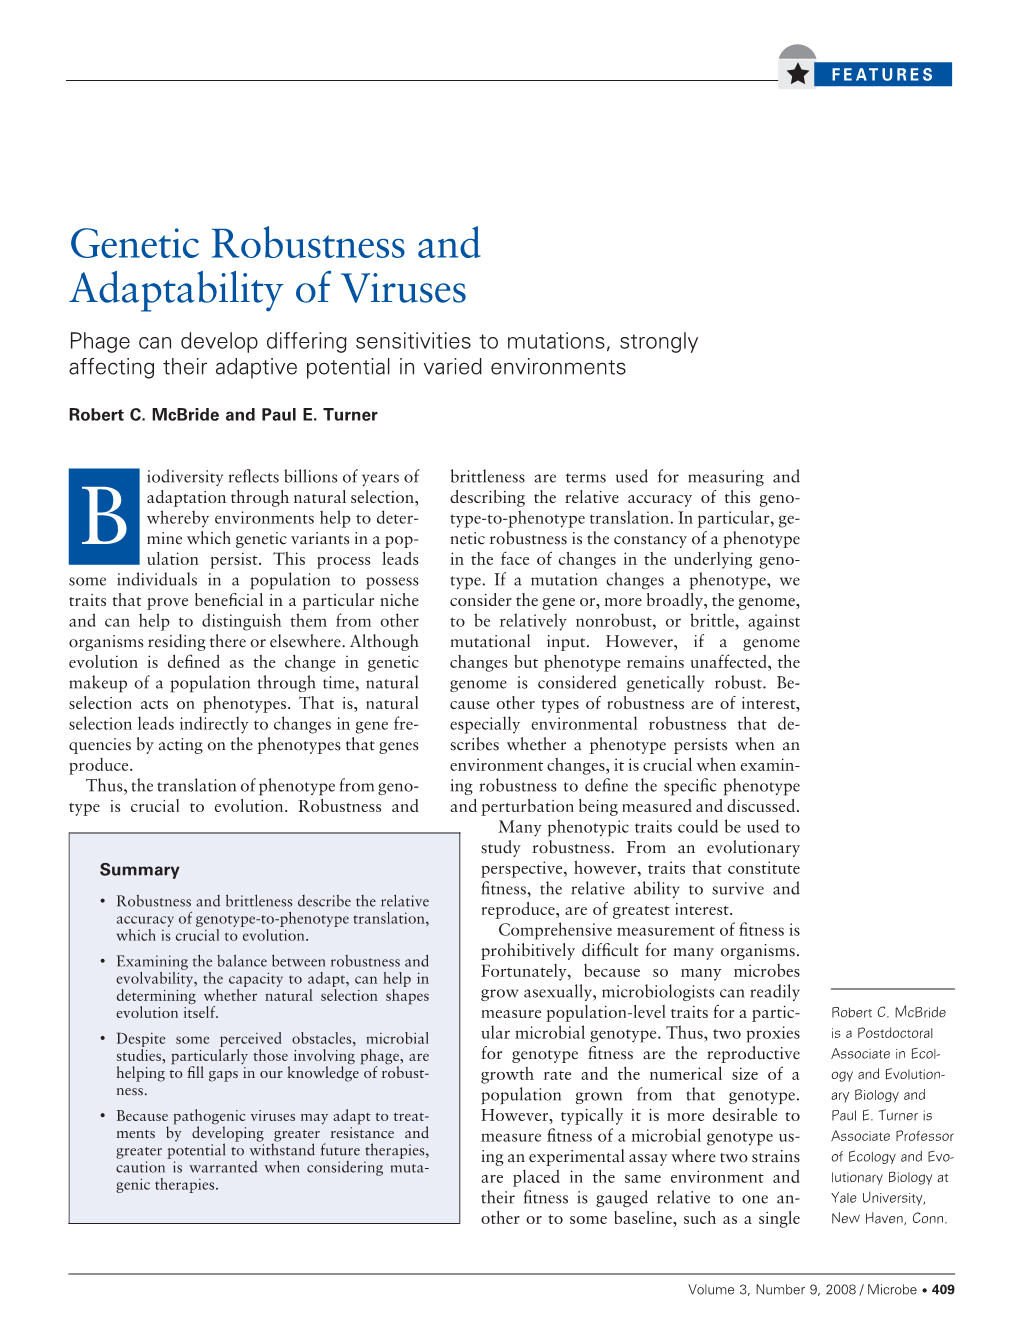 Genetic Robustness and Adaptability of Viruses